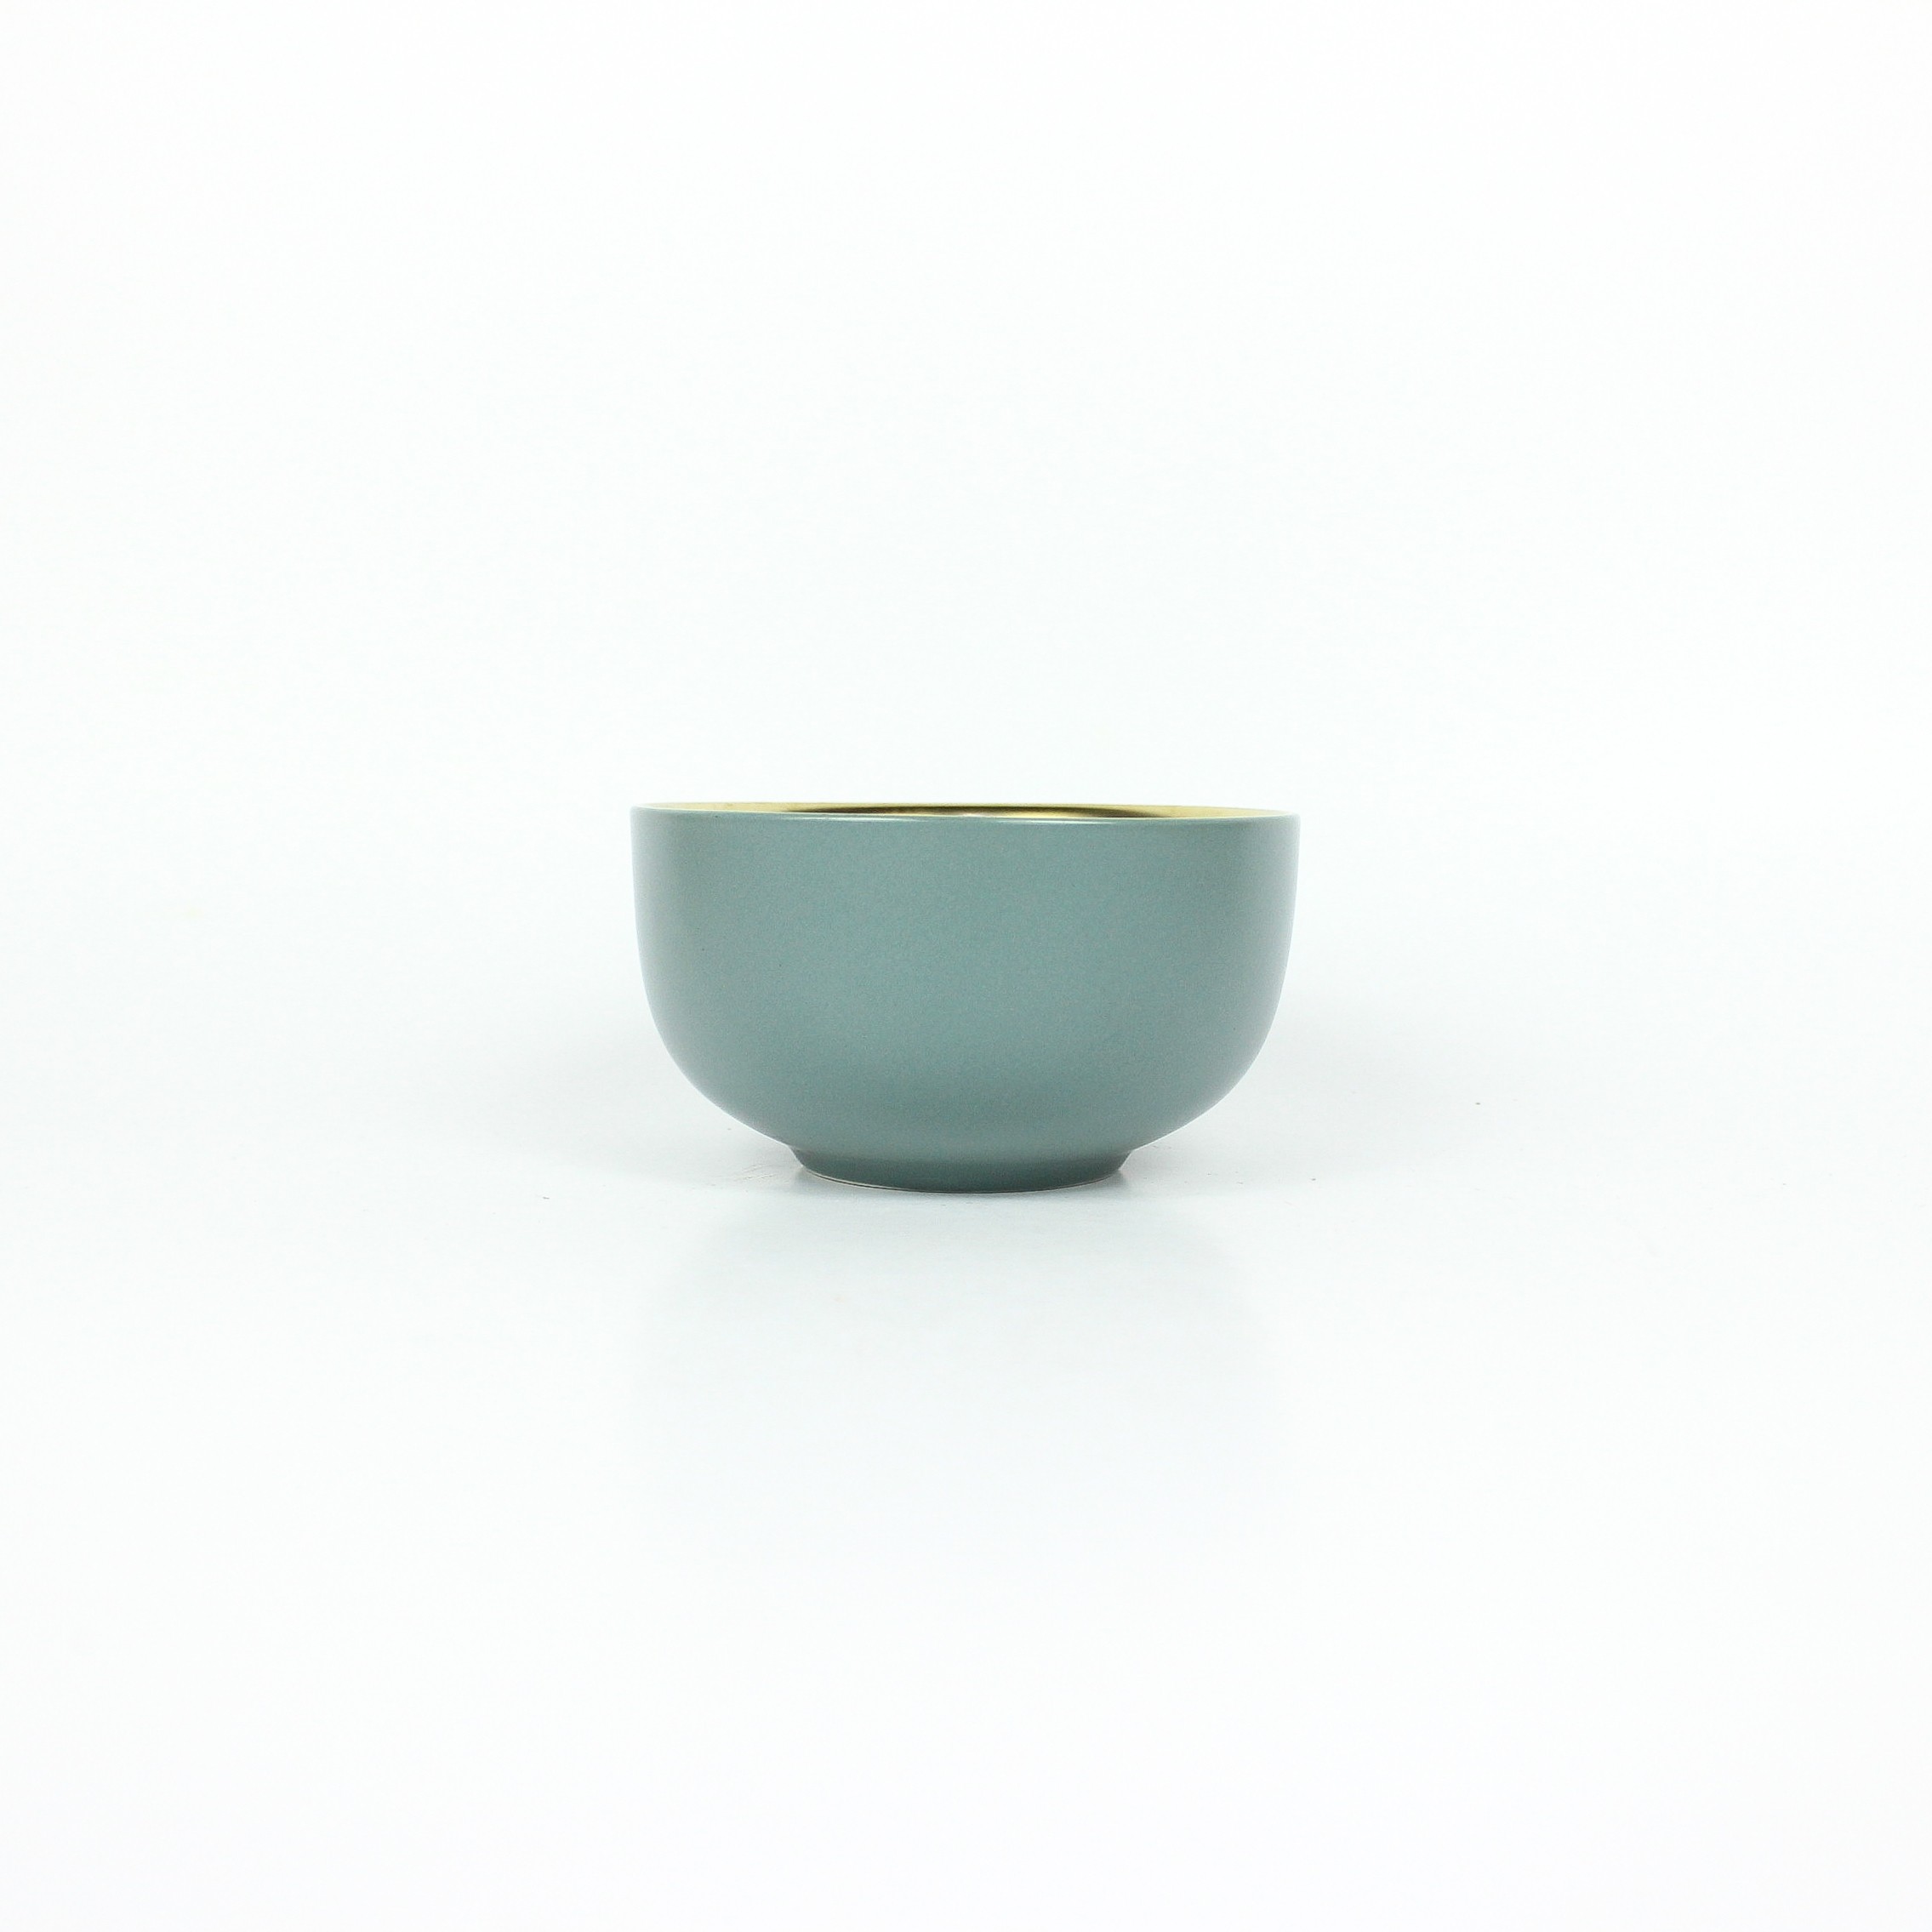 Bowl em Cerâmica Azul com Borda Dourada